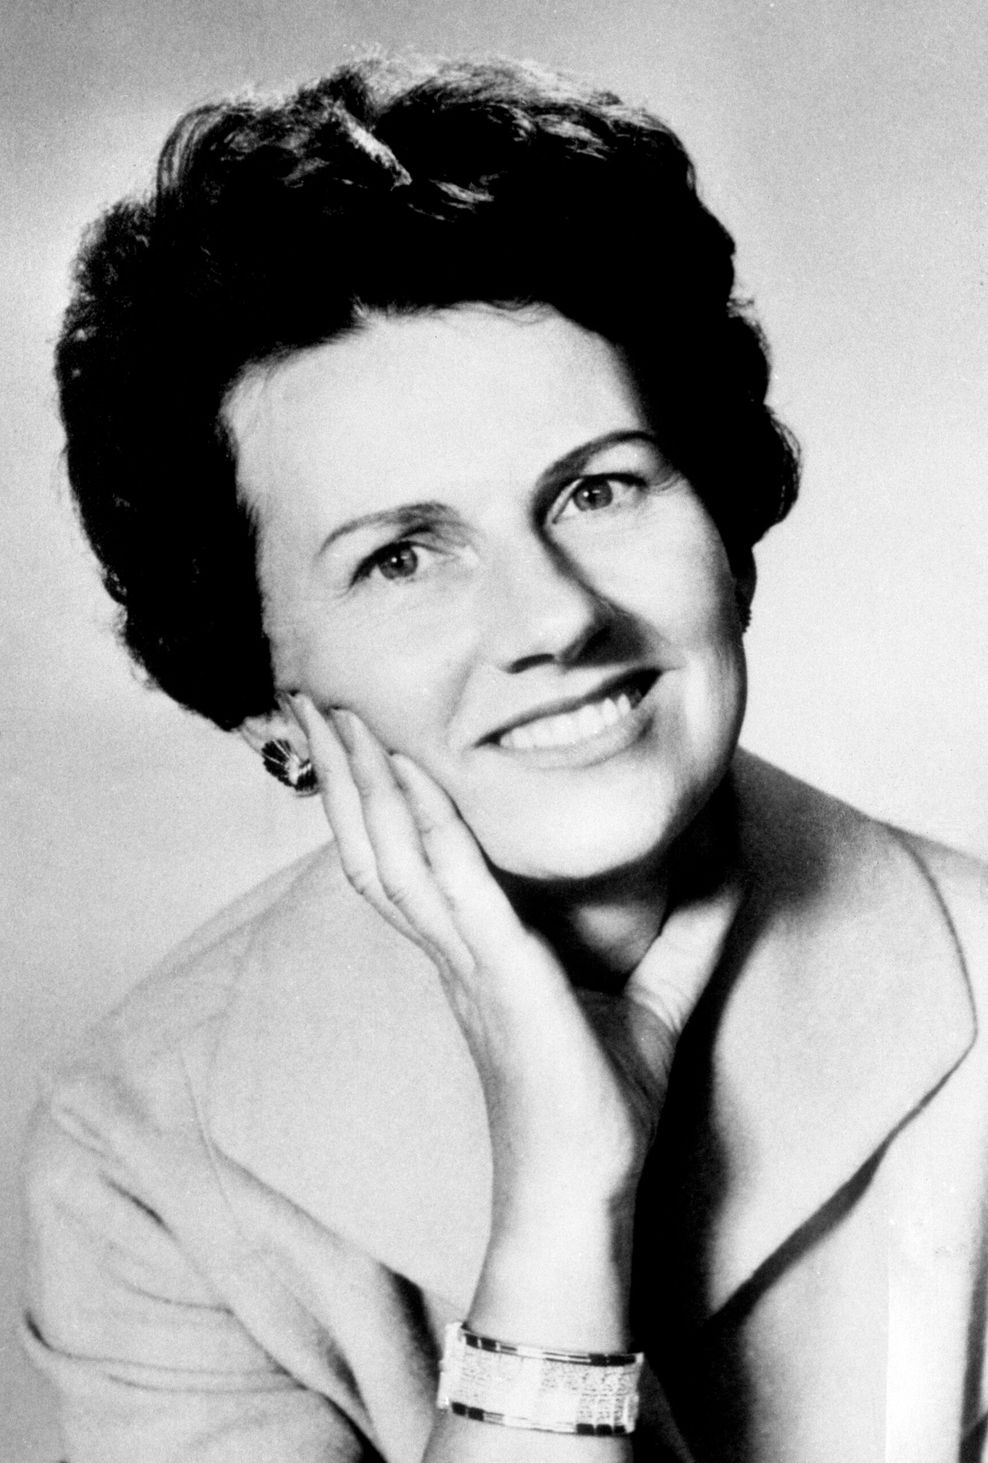 Porträt von Muriel Frieda McKay, Ehefrau des damaligen Stellvertreters von Medien-Tycoon Murdoch. (Archivbild von 1969)